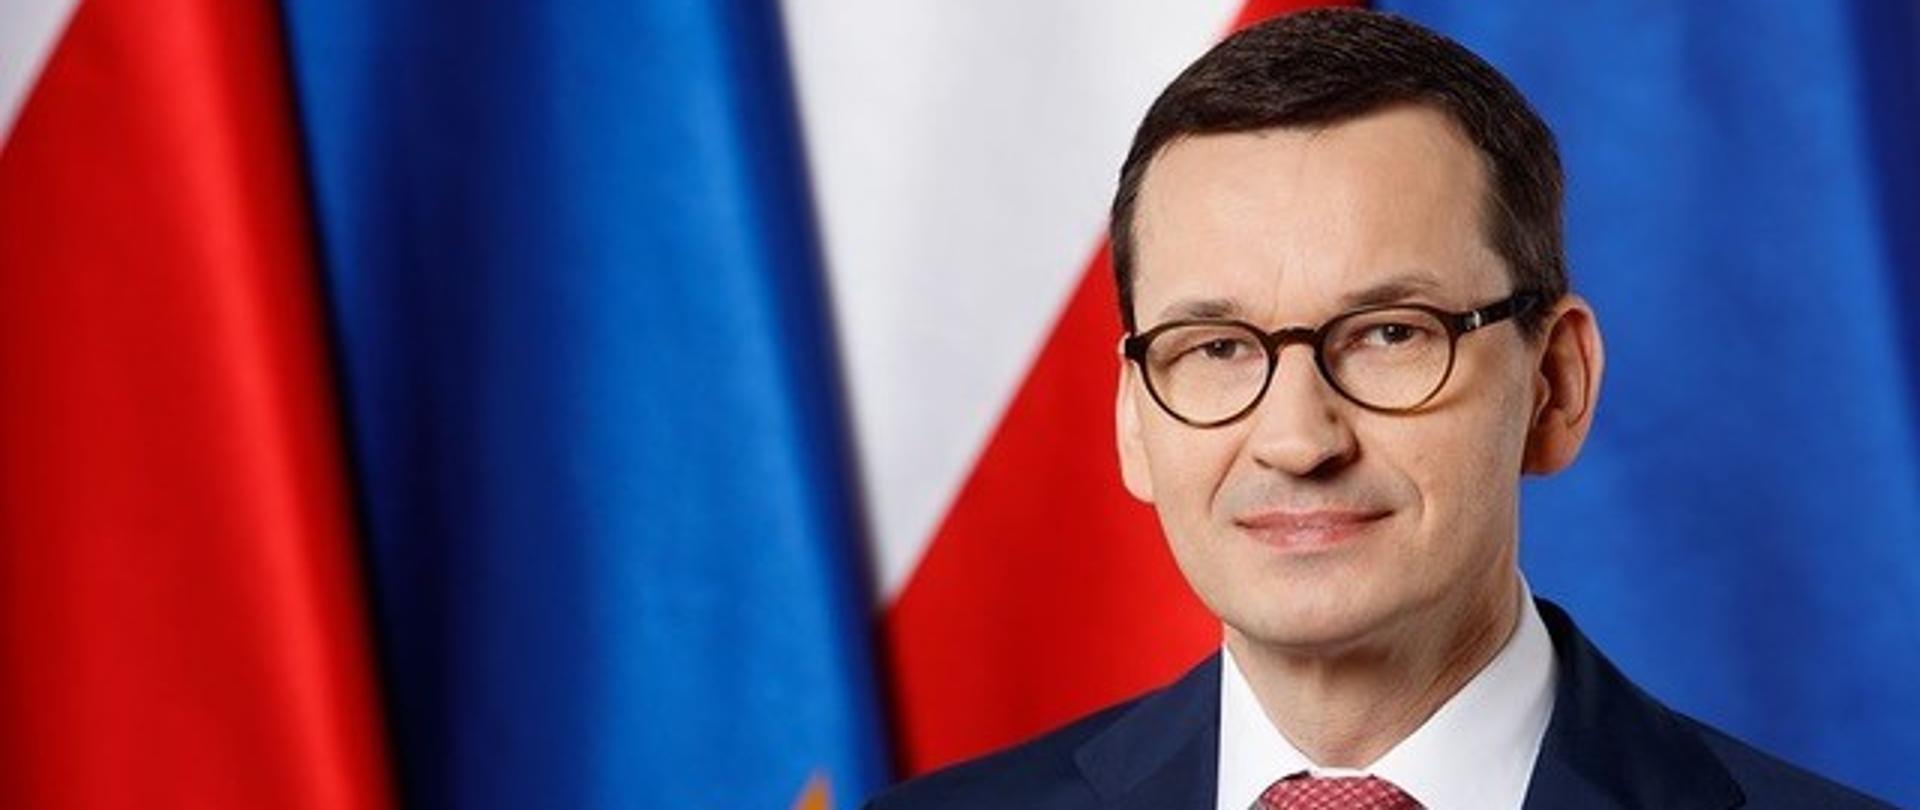 Prime Minister of of Poland Mateusz Morawiecki